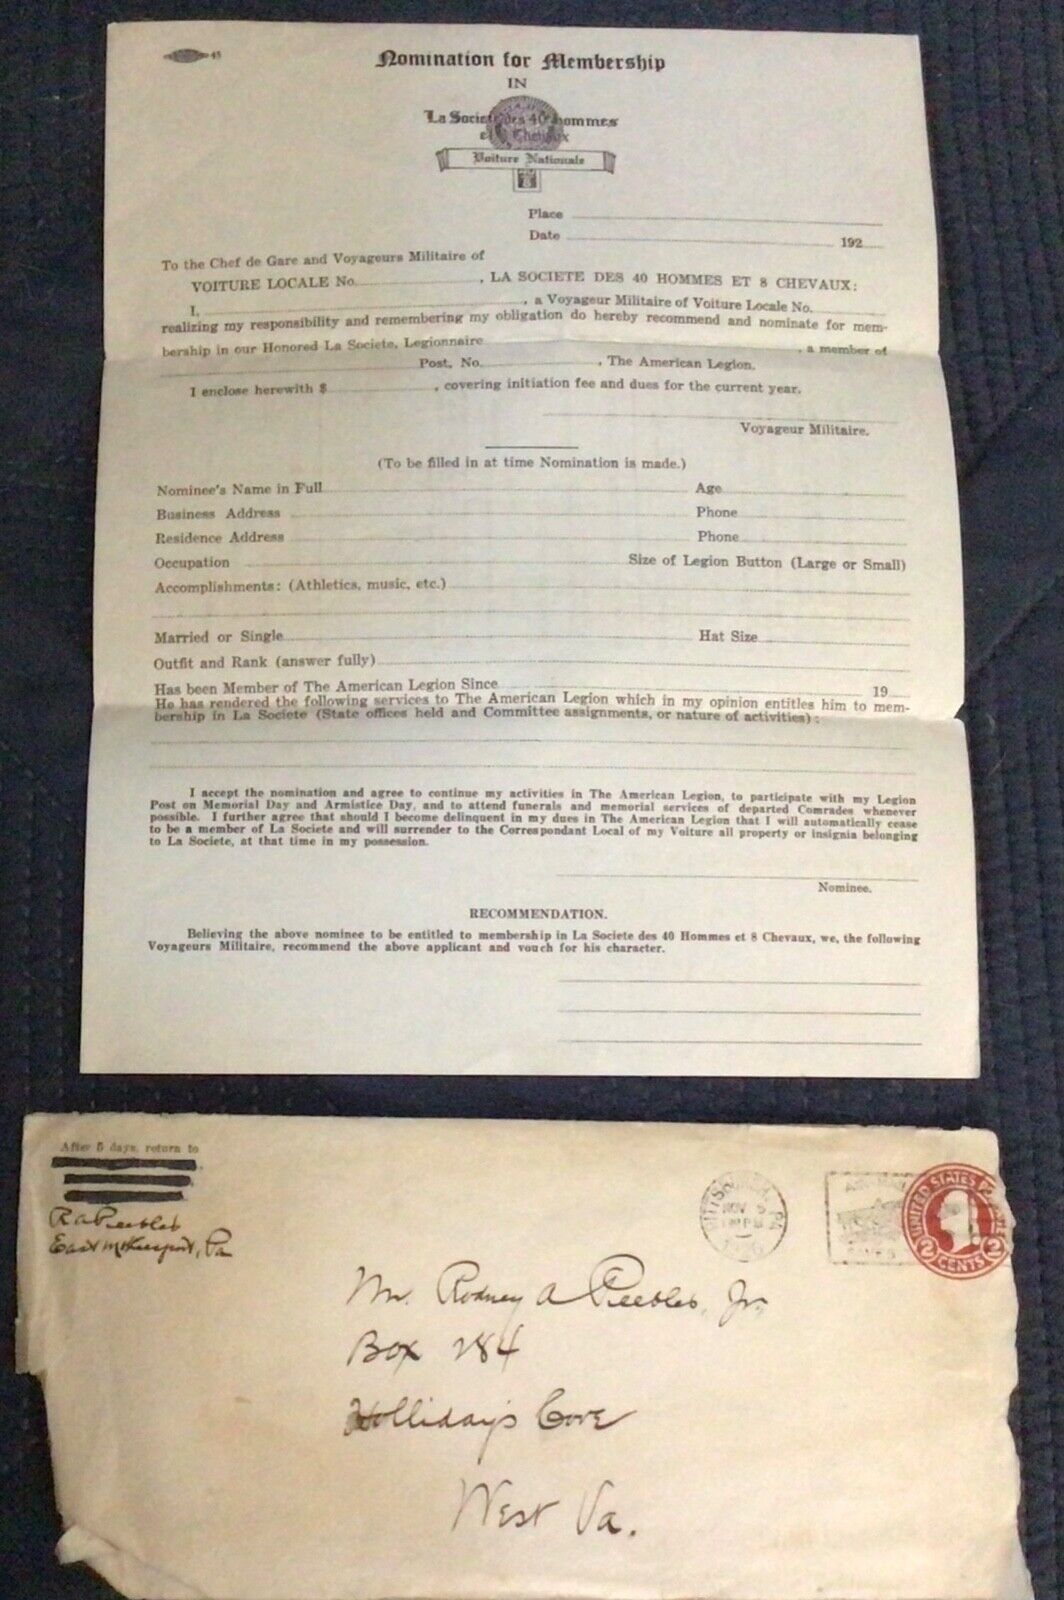 1926 Blank La Societe Des 40 Hommes Et 8 Chevaux nomination form, American Legio